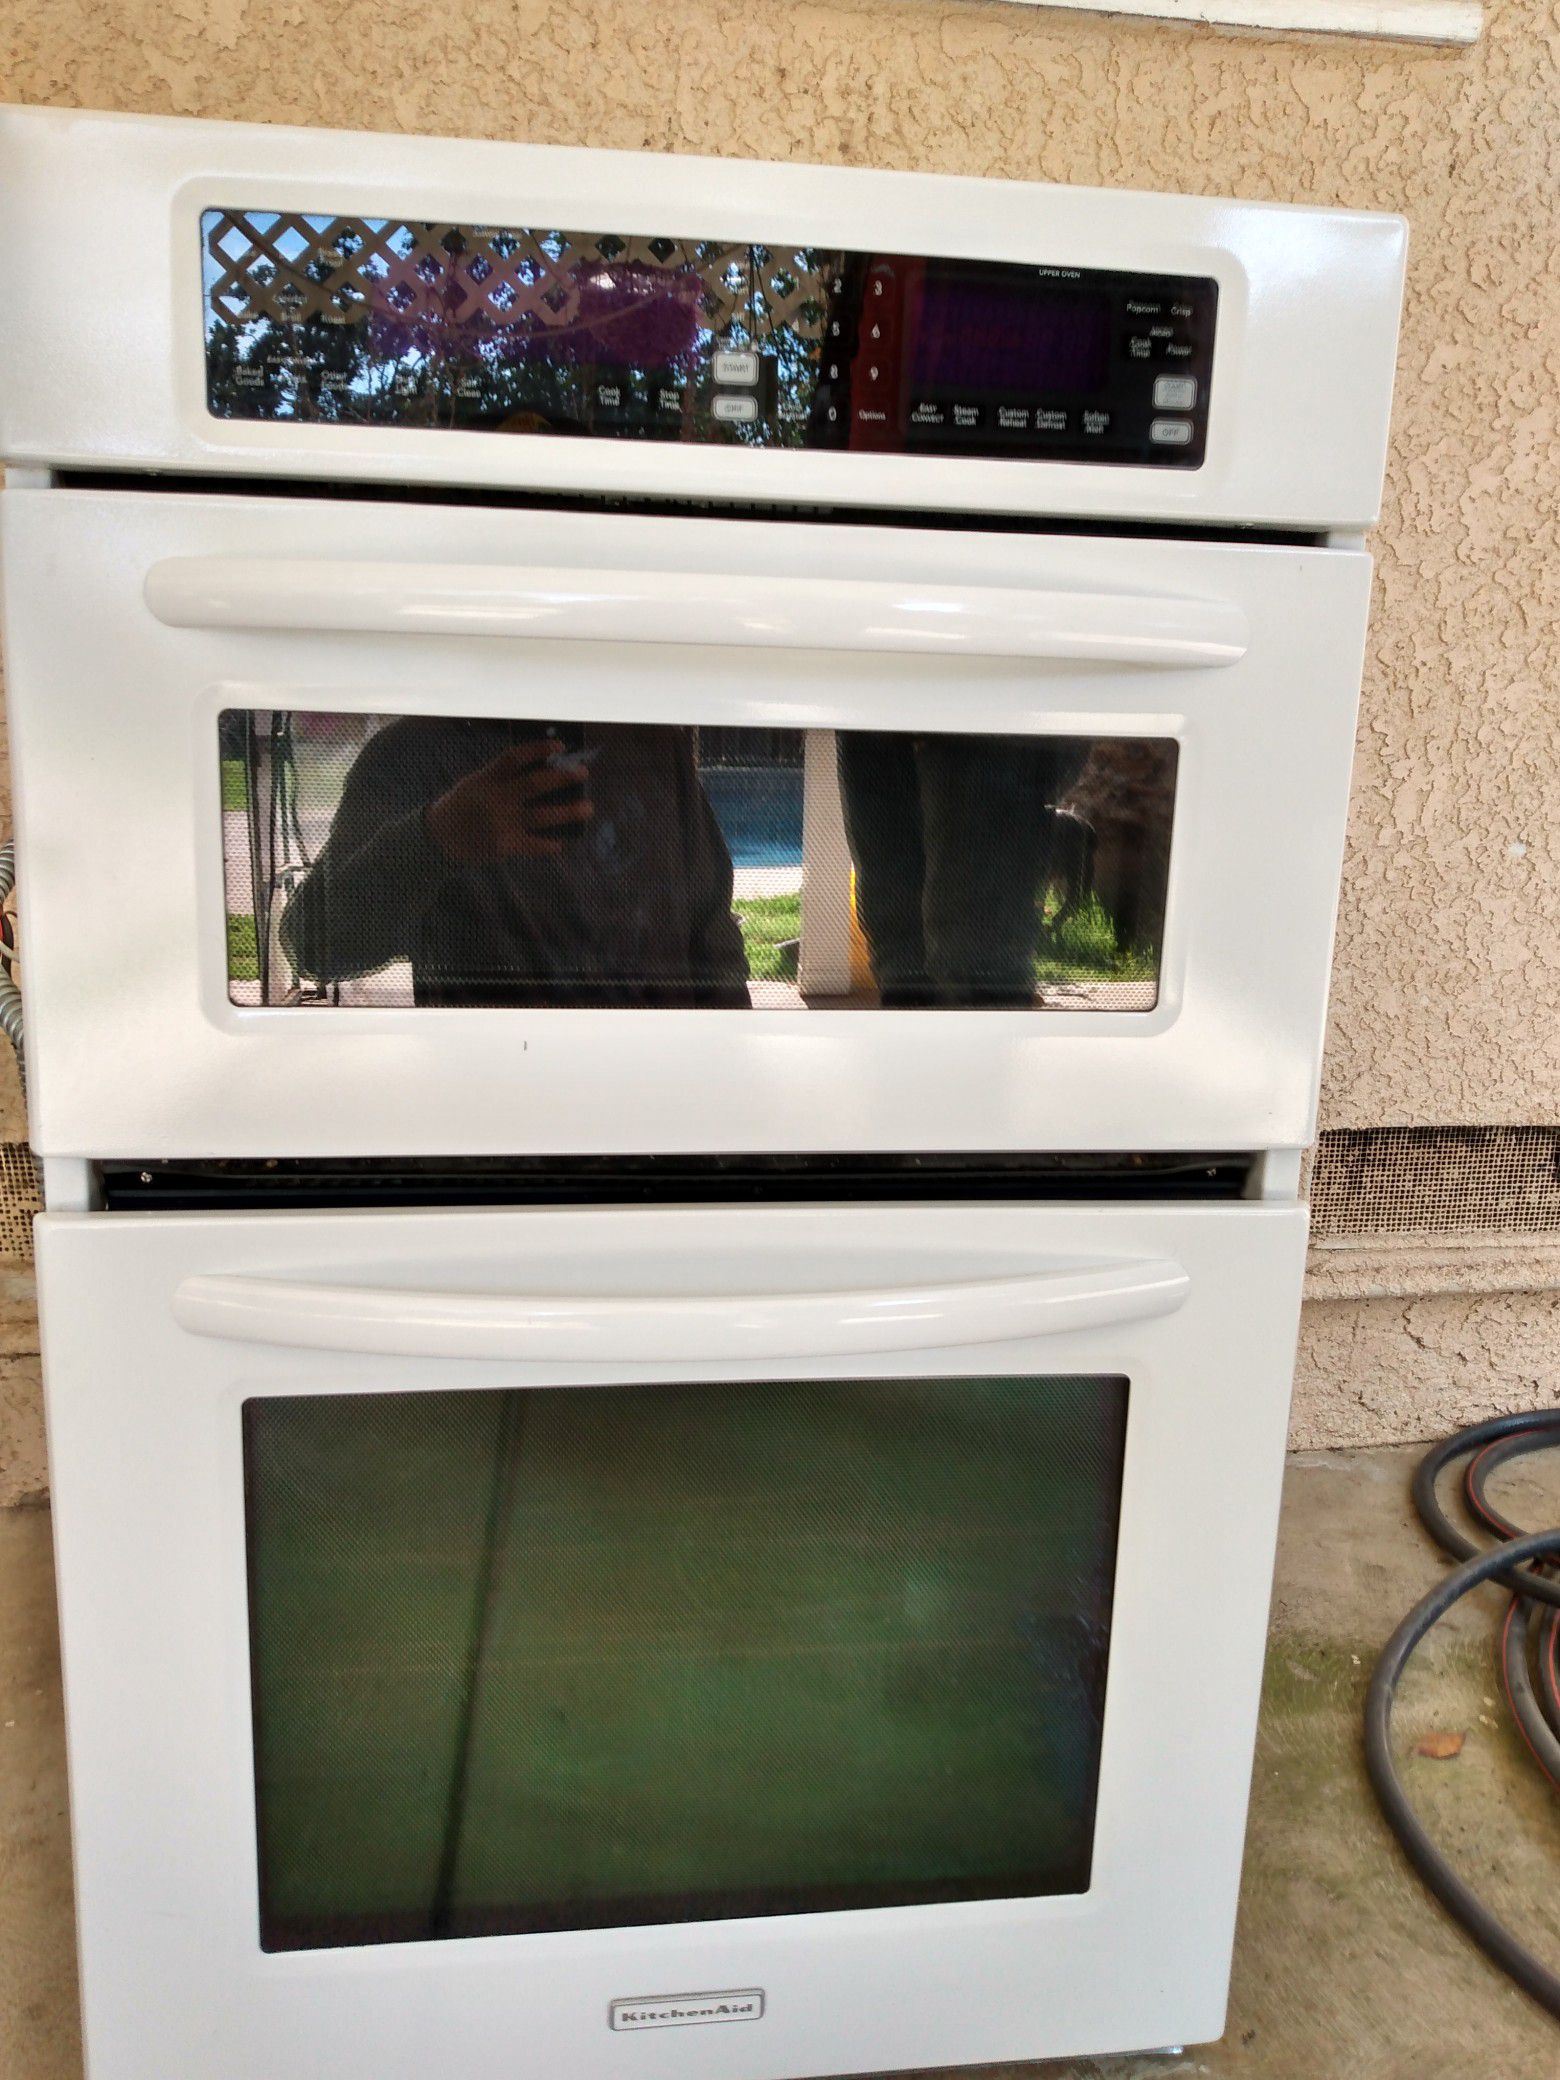 Oven/ microwave kitchenAid